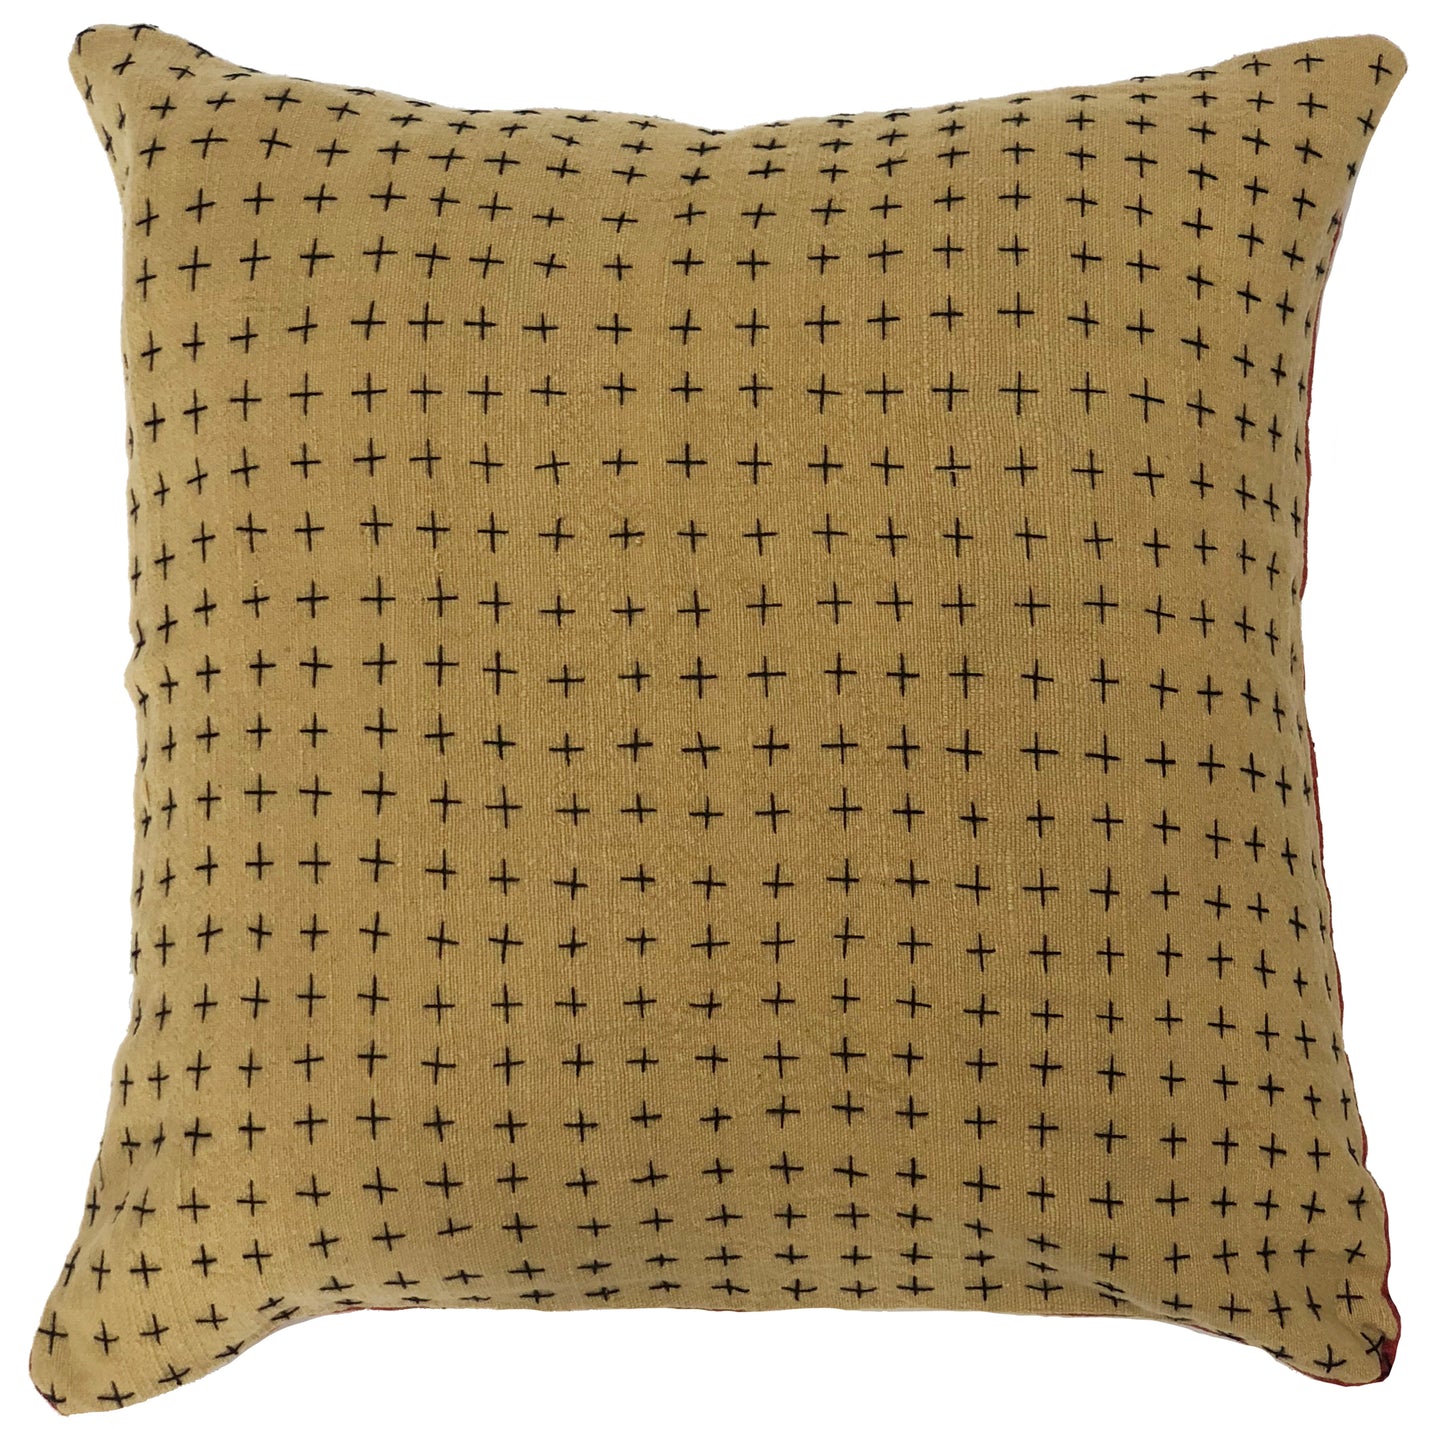 Indigo & Mustard Pillow Cover 18x18in